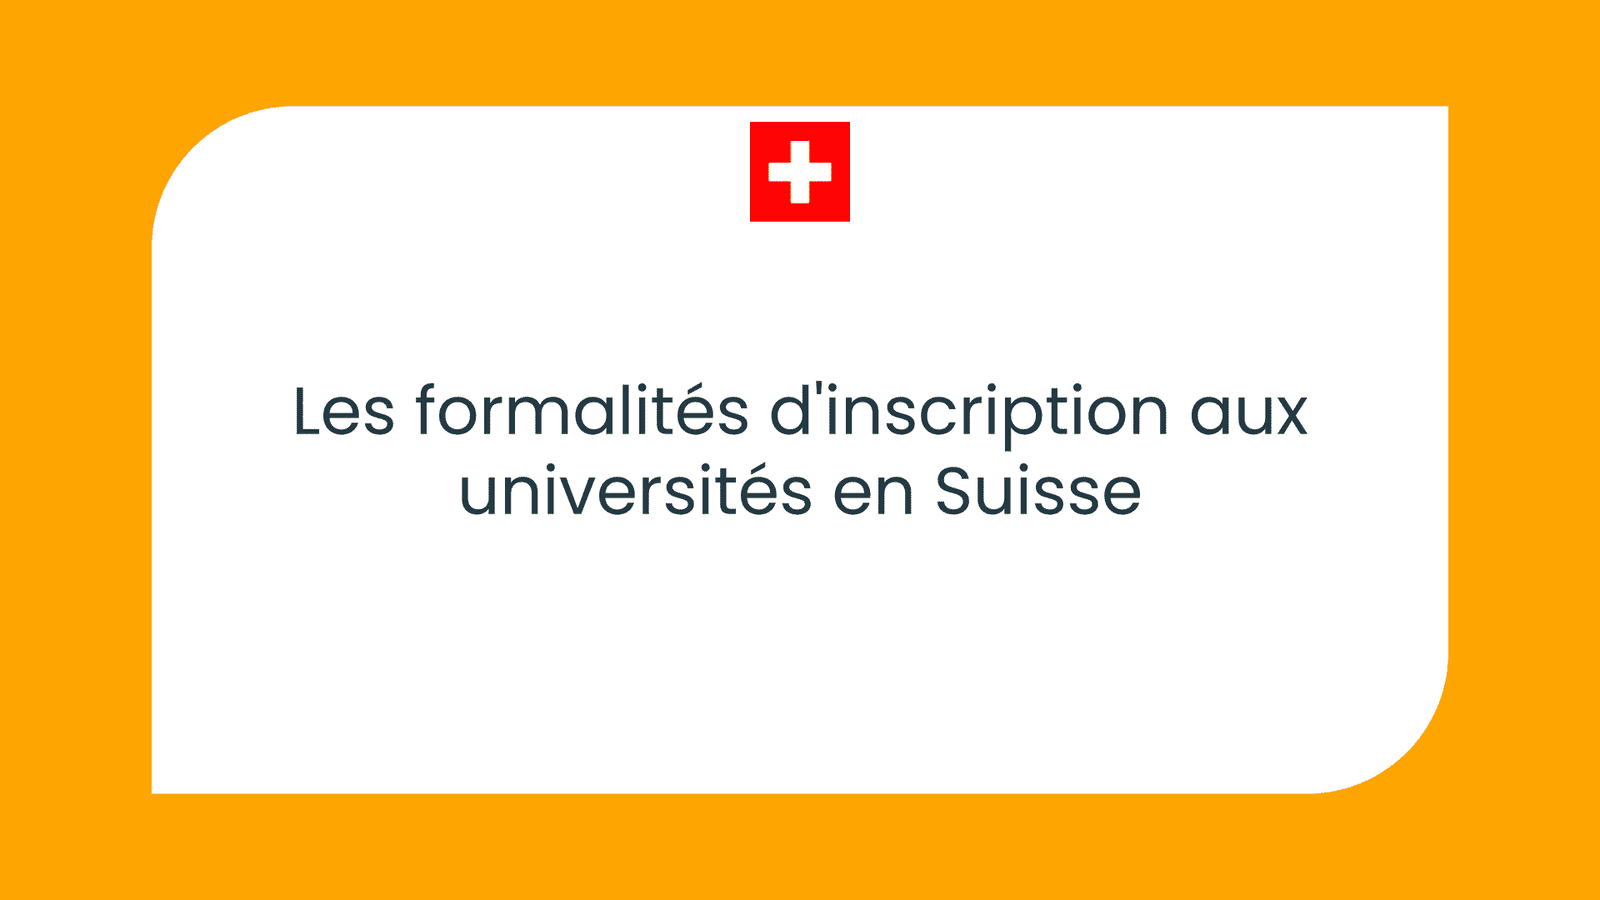 Les formalités d'inscription aux universités en Suisse